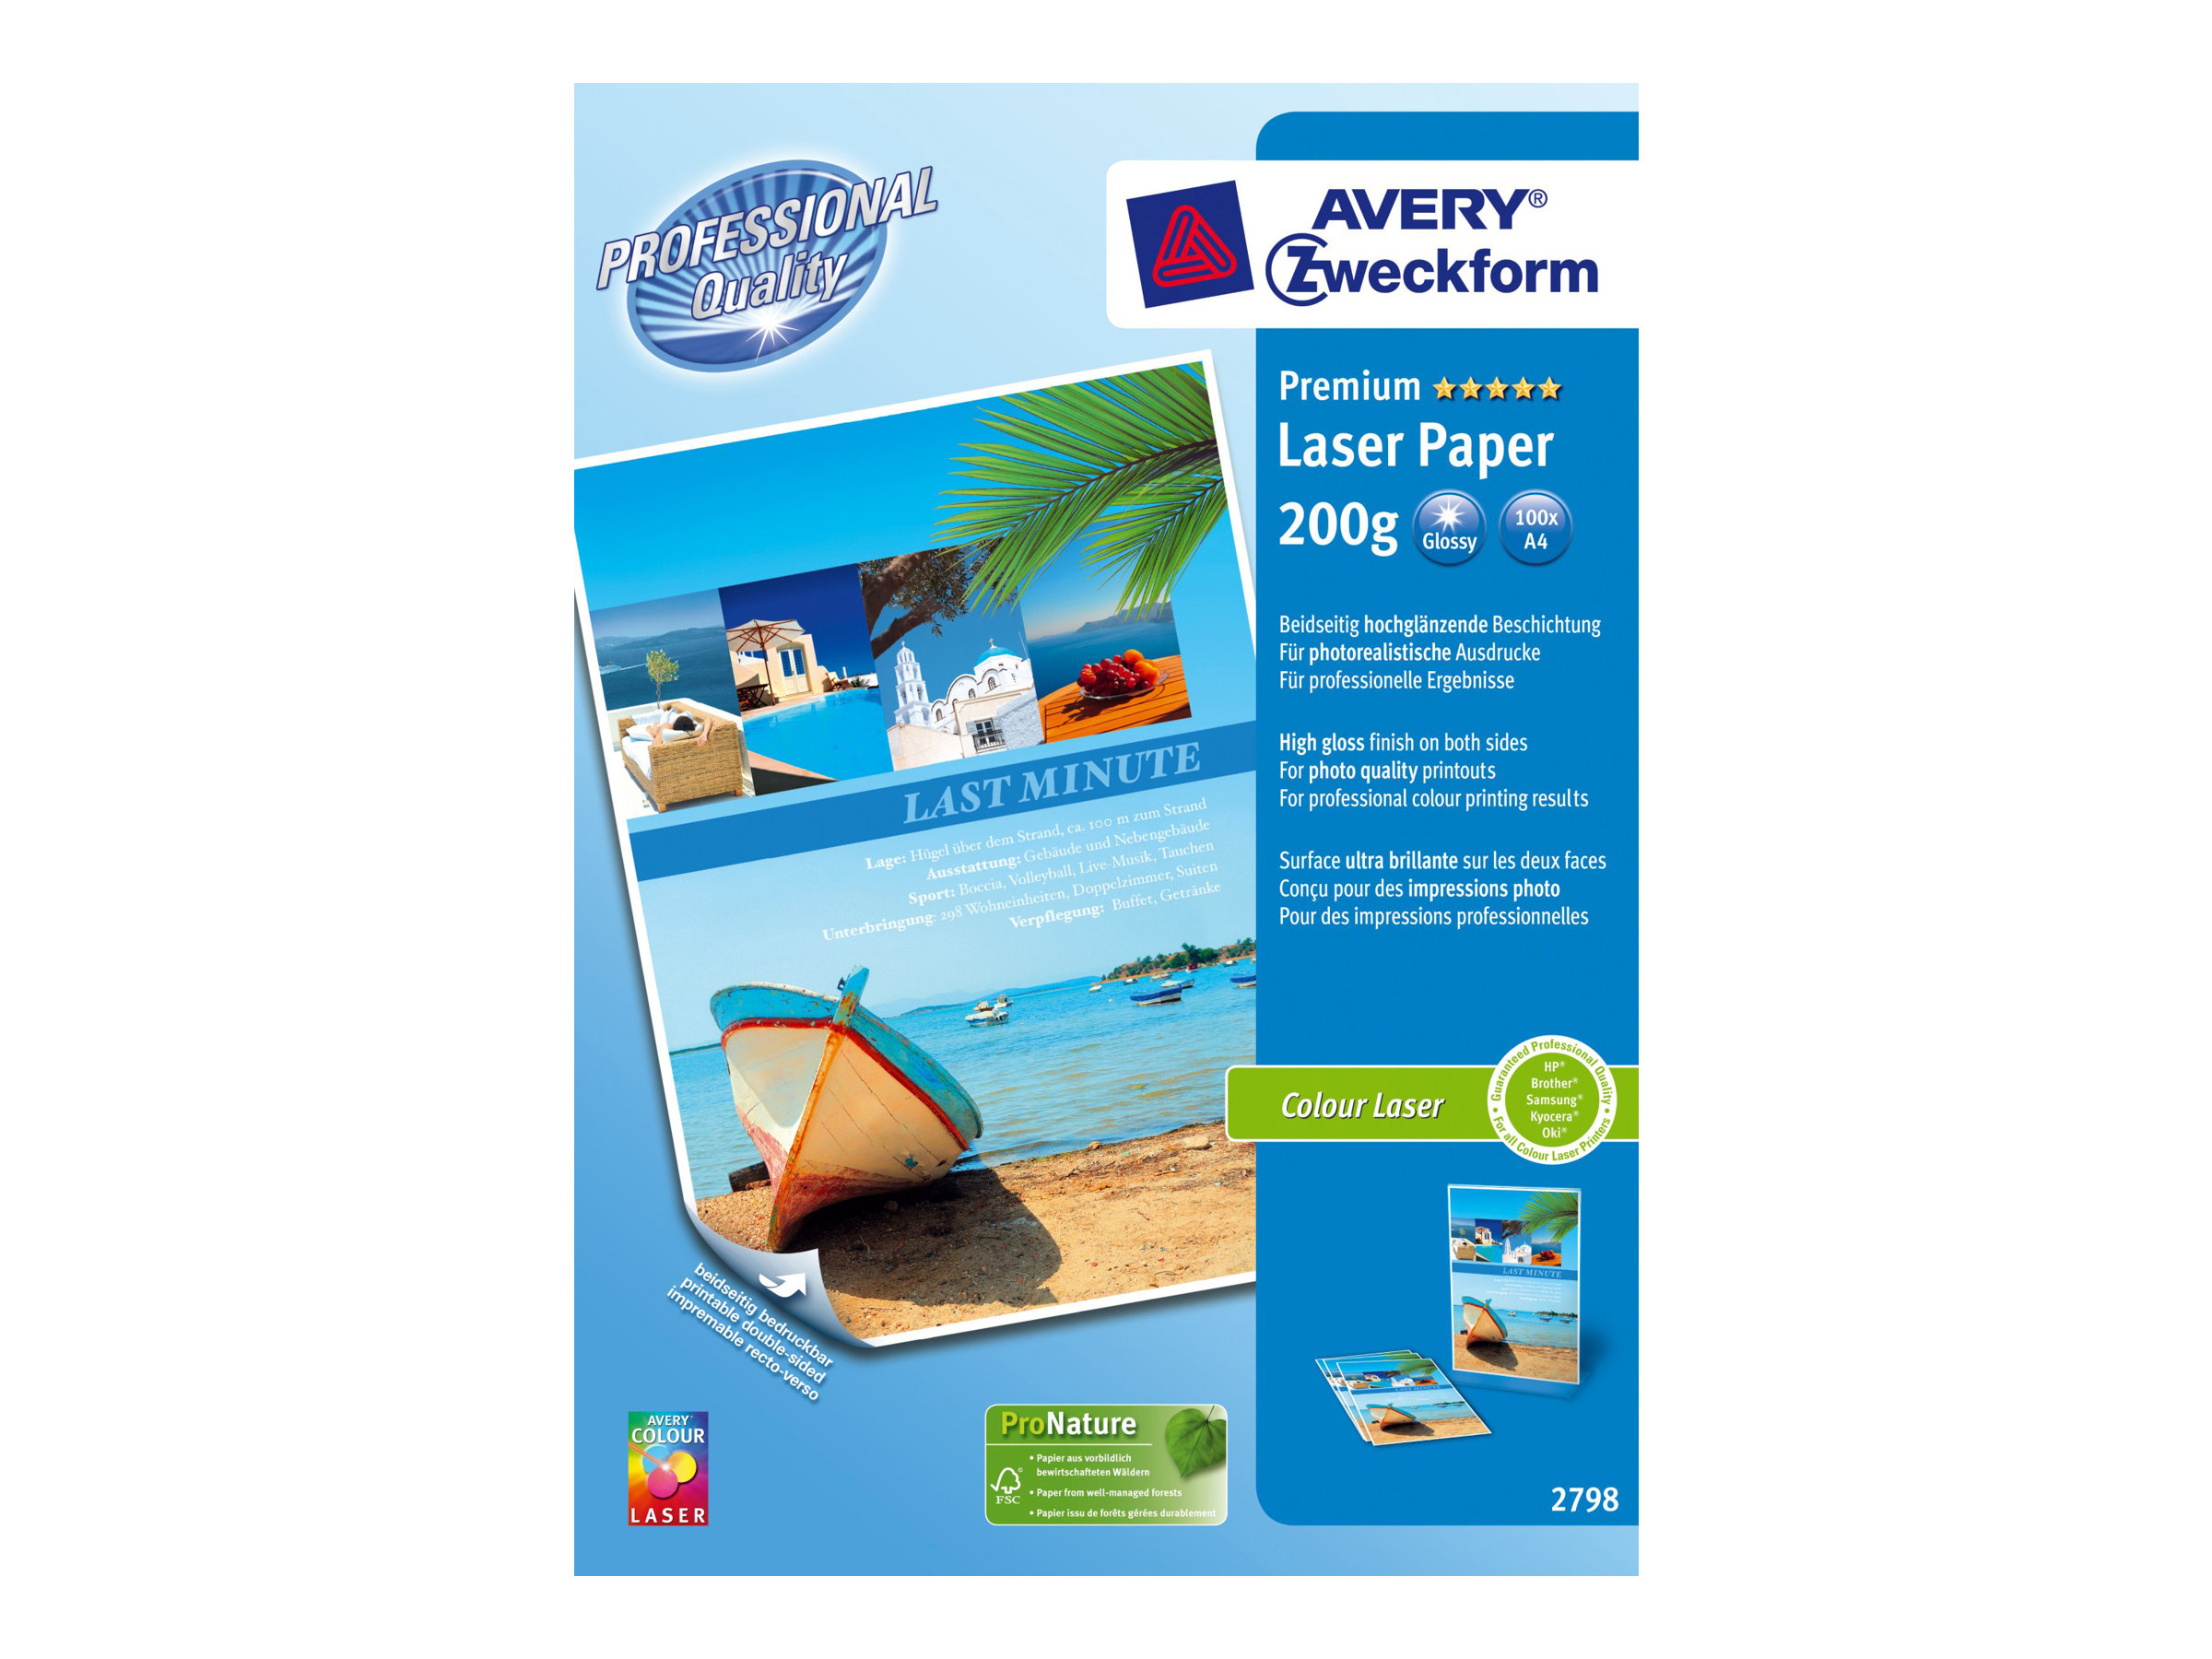 Avery Zweckform Premium Colour Laser Paper 2798 - Glnzend - weiss - A4 (210 x 297 mm) - 200 g/m - 100 Blatt Papier